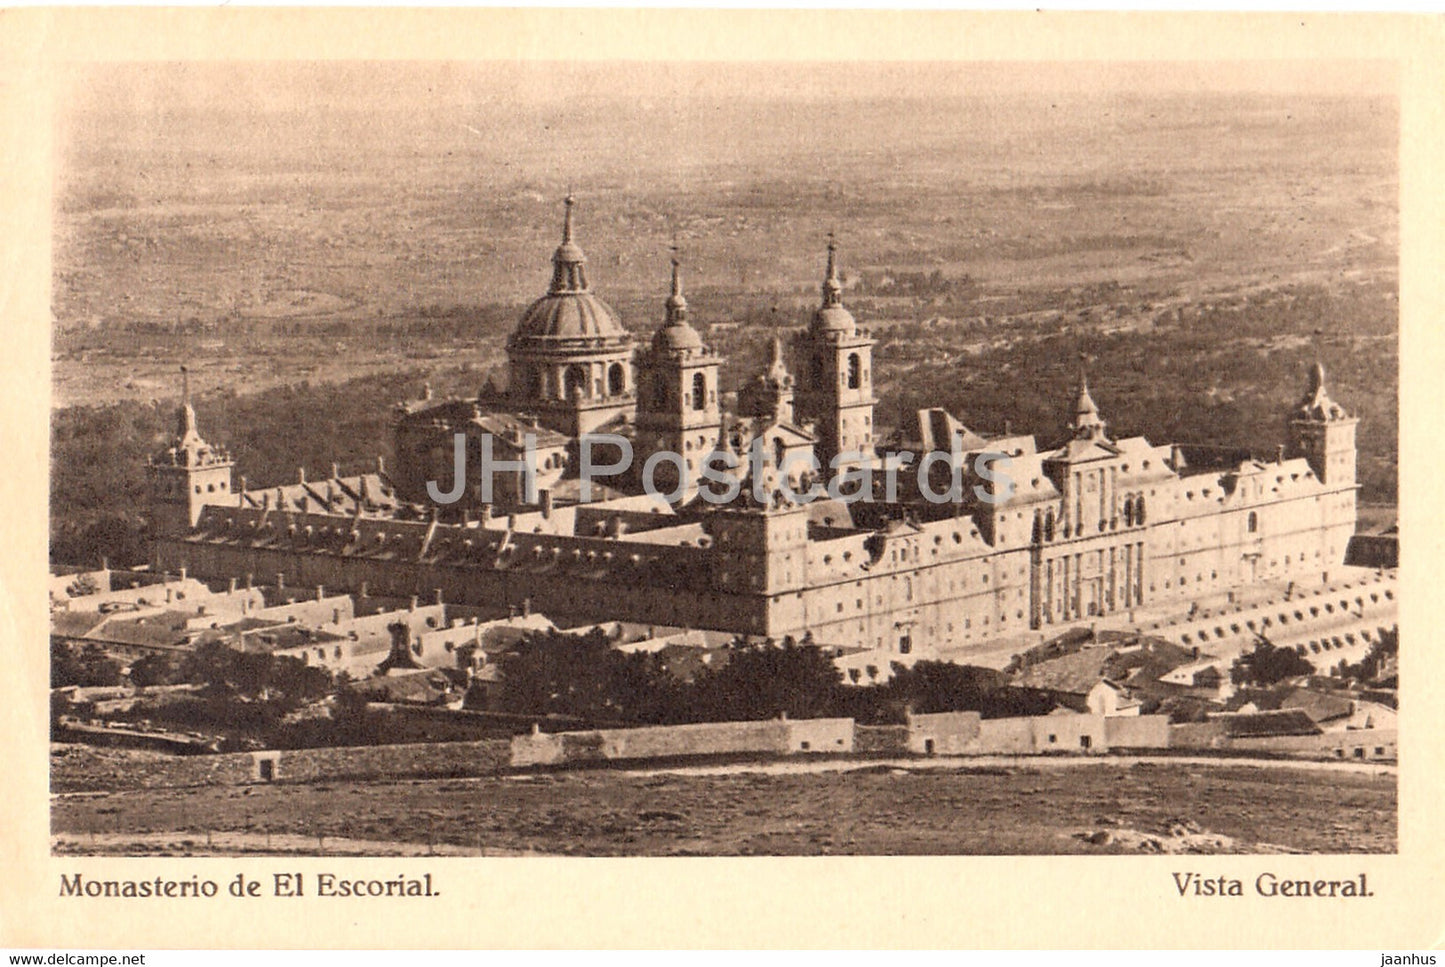 Monasterio de El Escorial - Vista General - old postcard - Spain - unused - JH Postcards